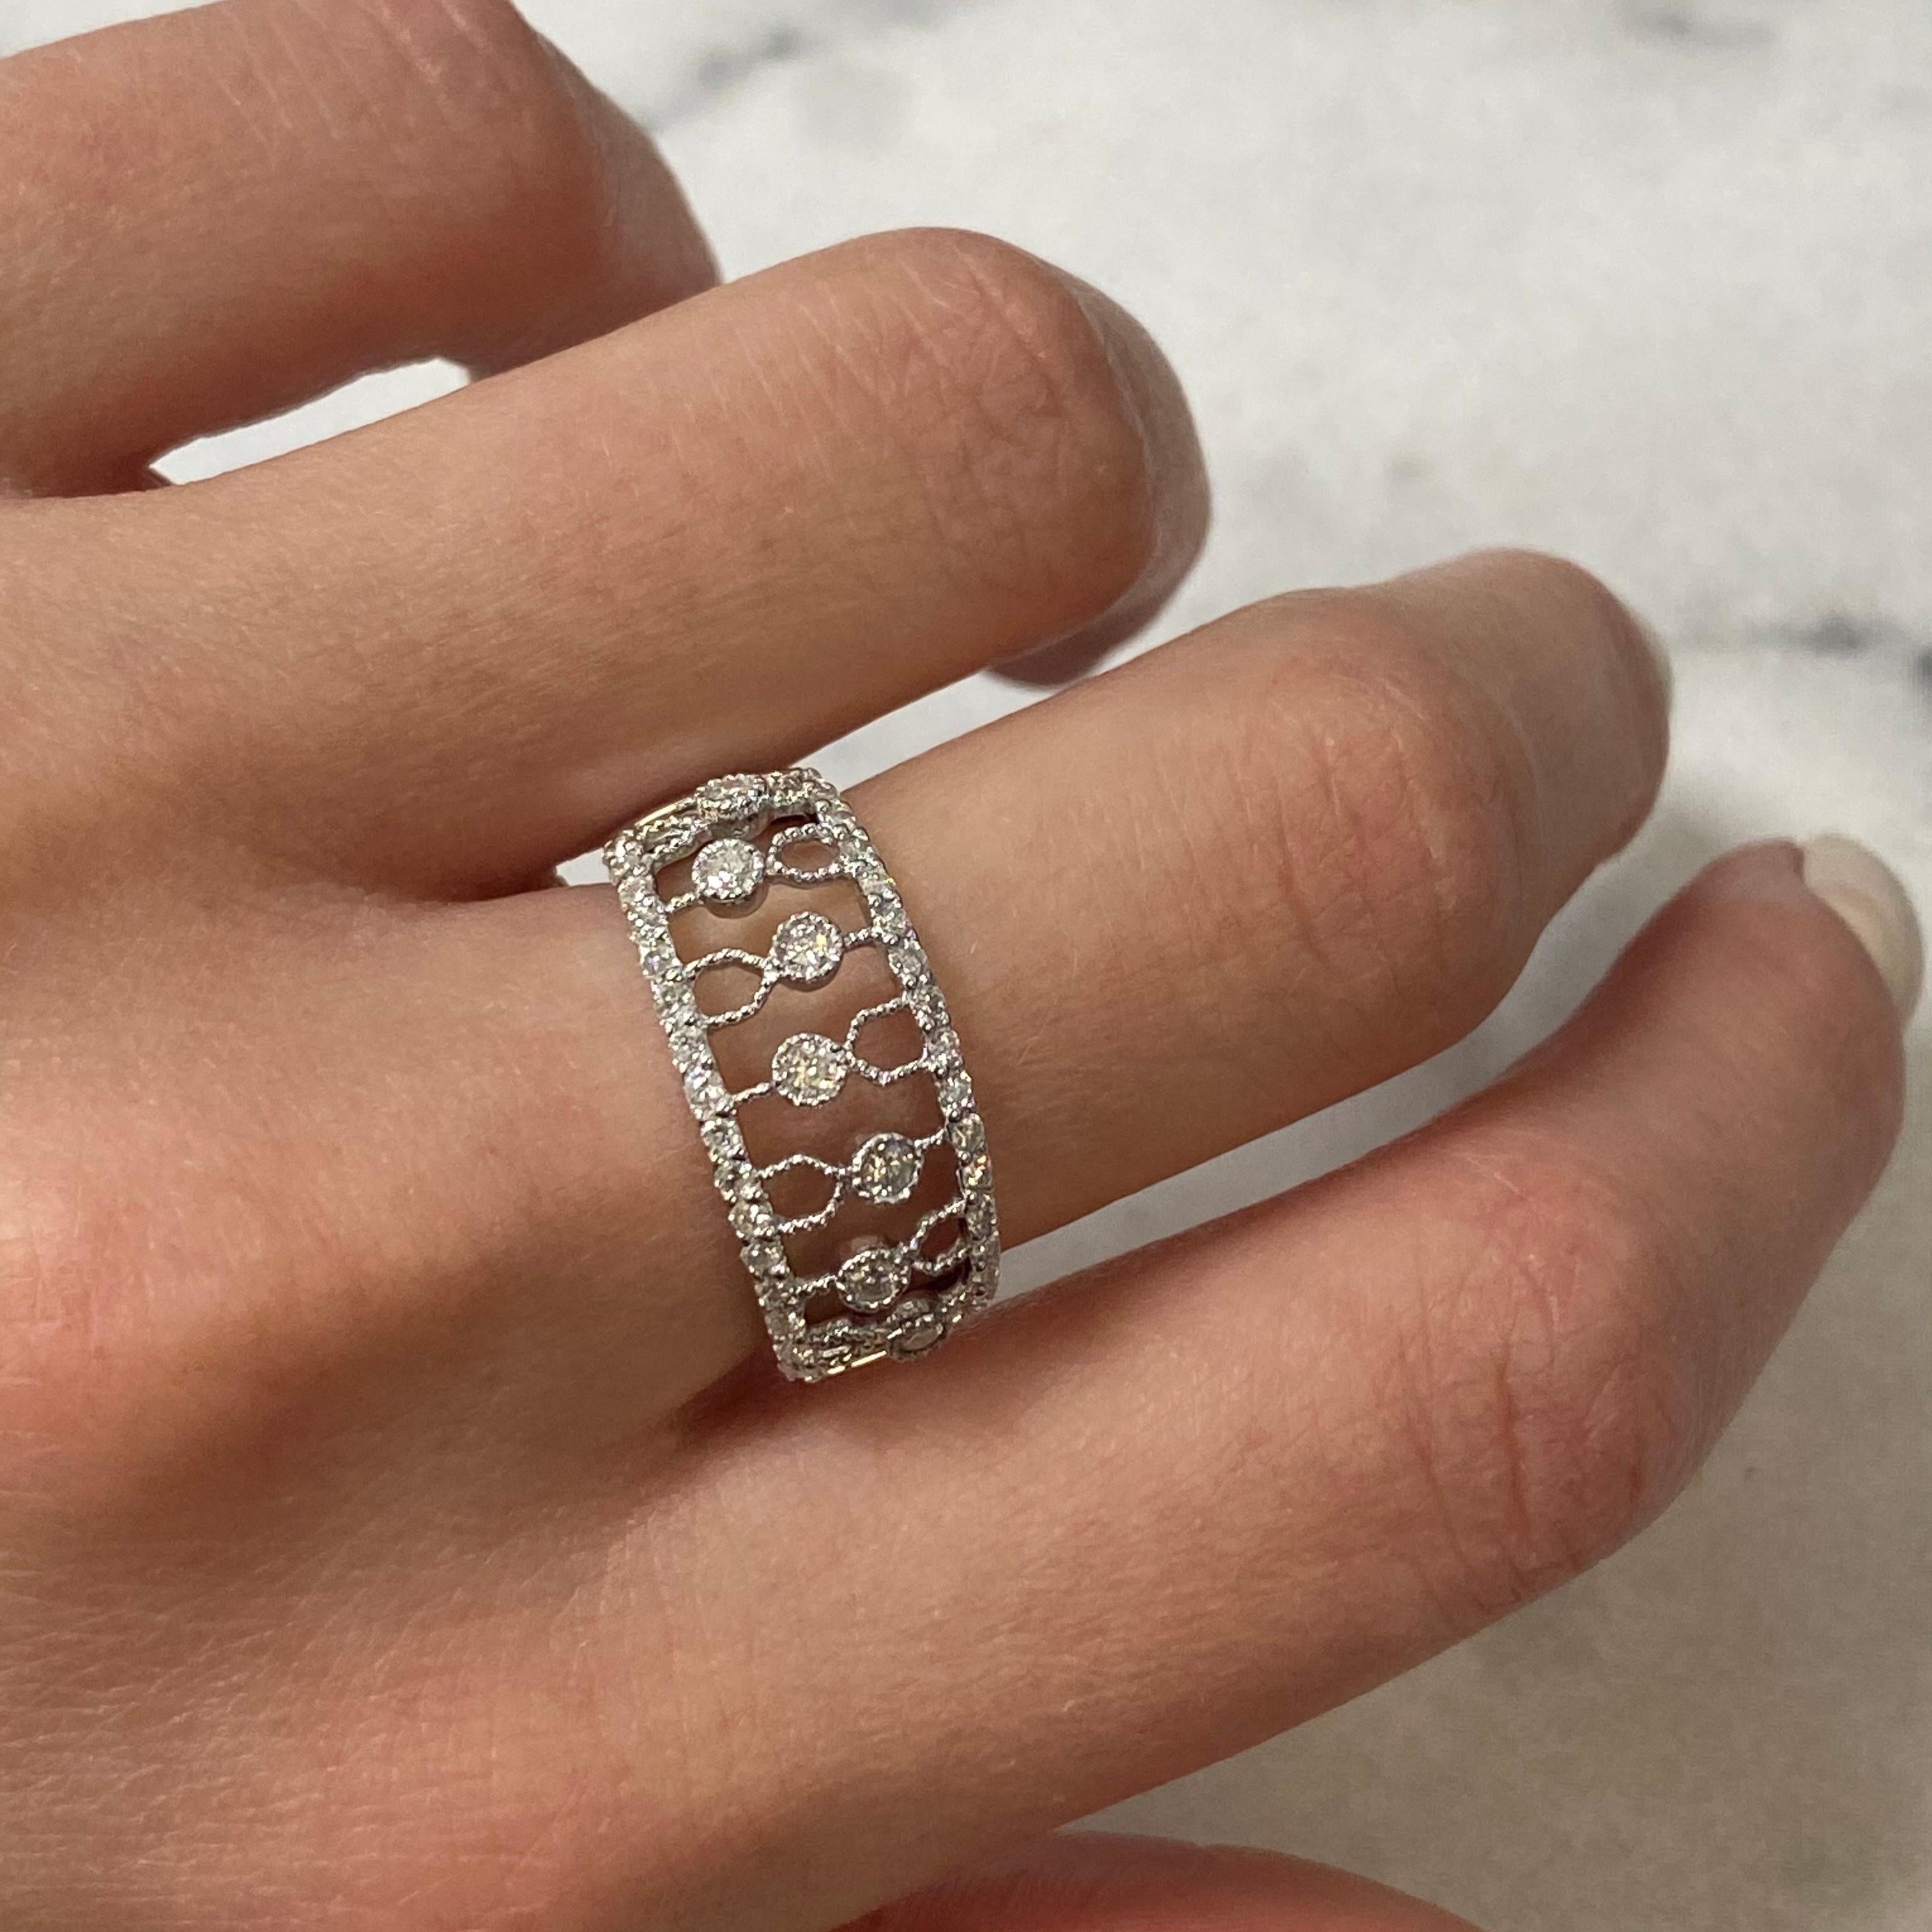 Modern Rachel Koen Diamond Thick Band Ring 14K White Gold 0.50cttw For Sale